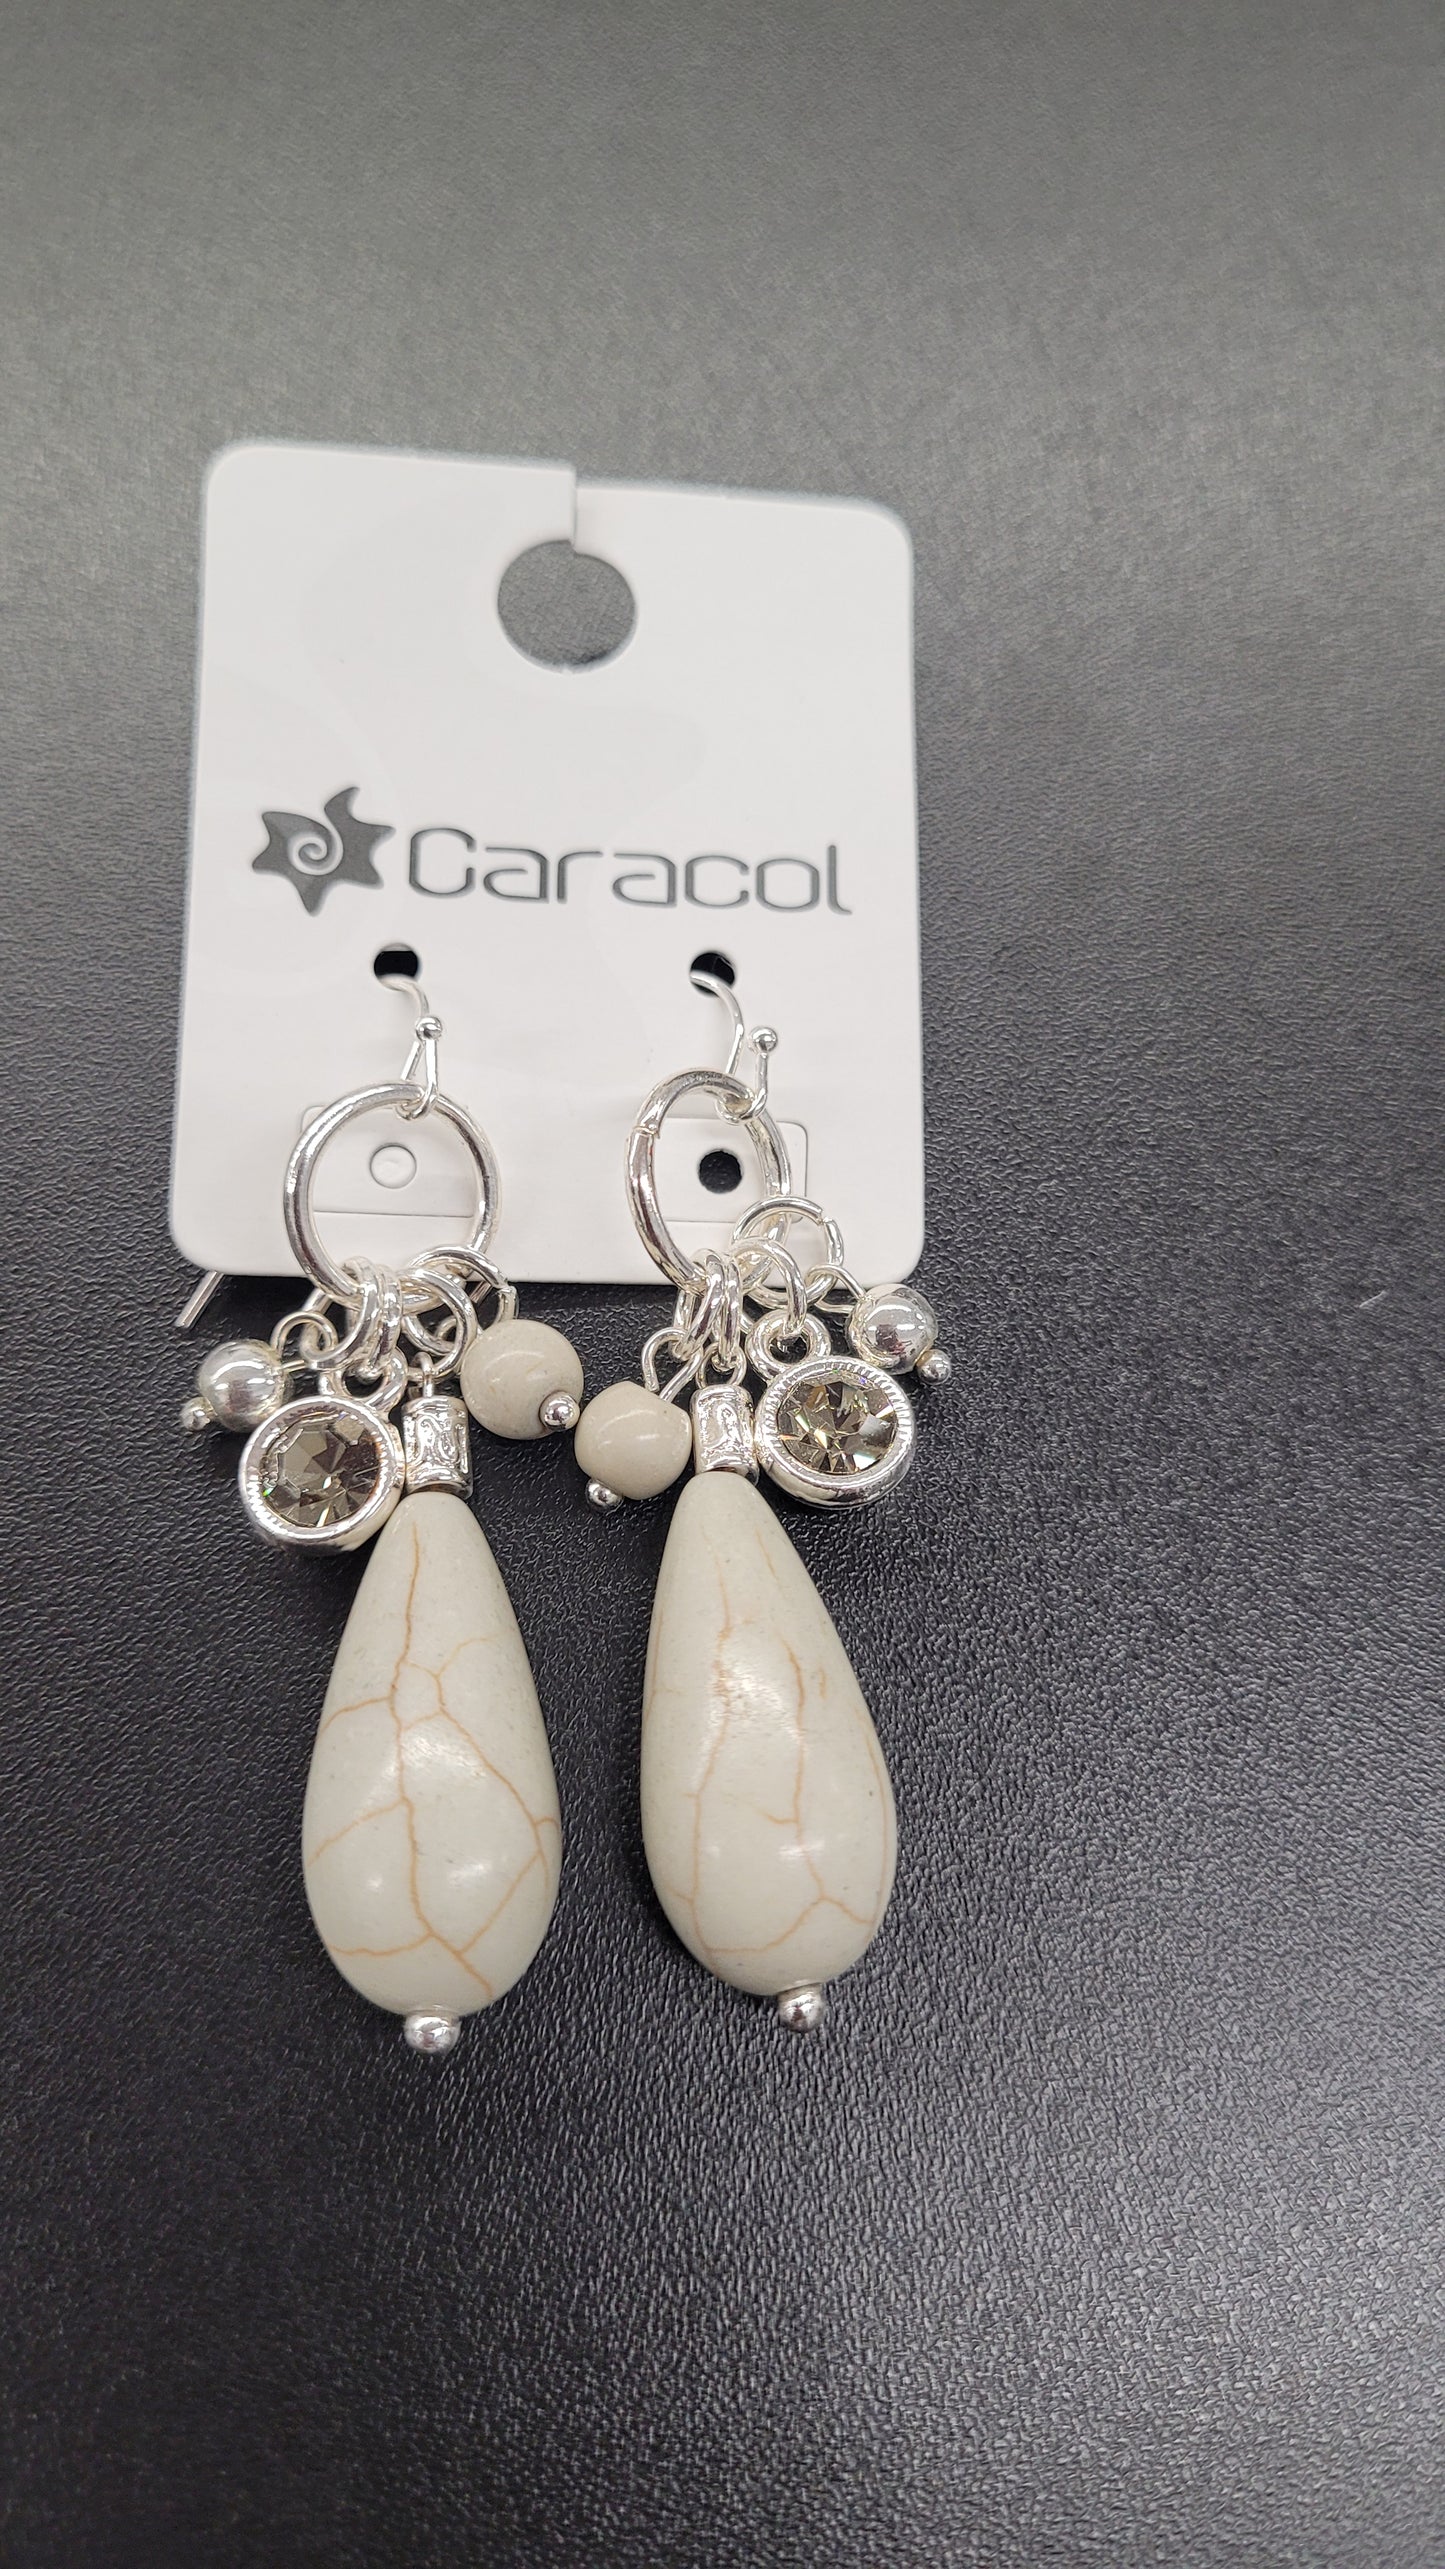 Caracol Silver and Beige Bead Earrings 2377-BGE